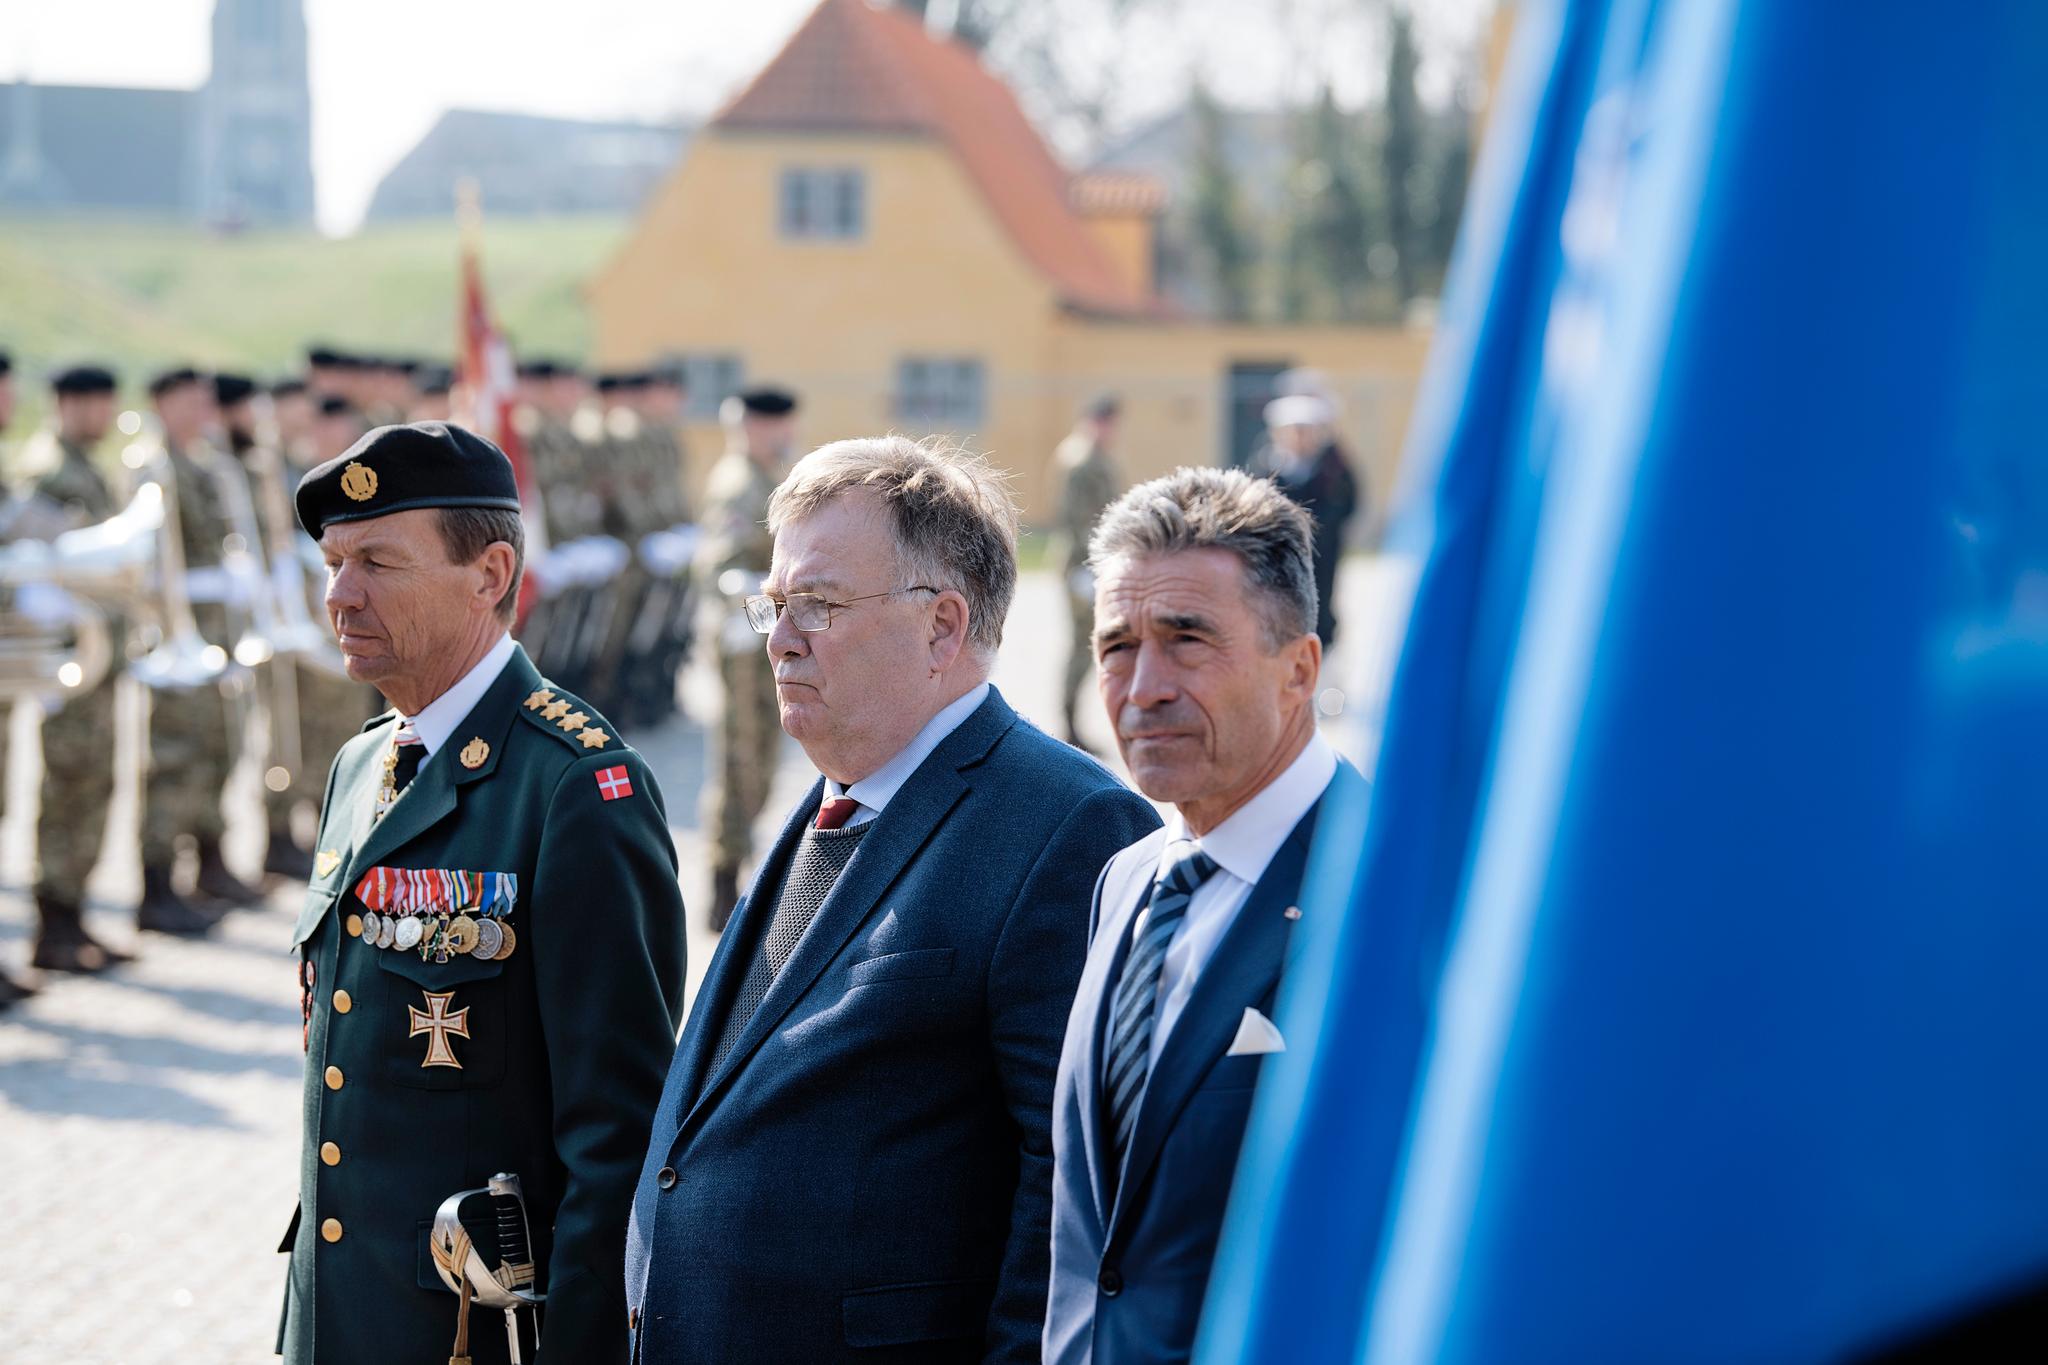 Danmarks tidligere forsvarsminister Claus Hjort Frederiksen (i midten) bekrefter at han er siktet for å ha overtrådt grensene for sin ytringsfrihet. Her er han fotografert med tidligere NATO-generalsekretær Anders Fogh Rasmussen i 2019. 